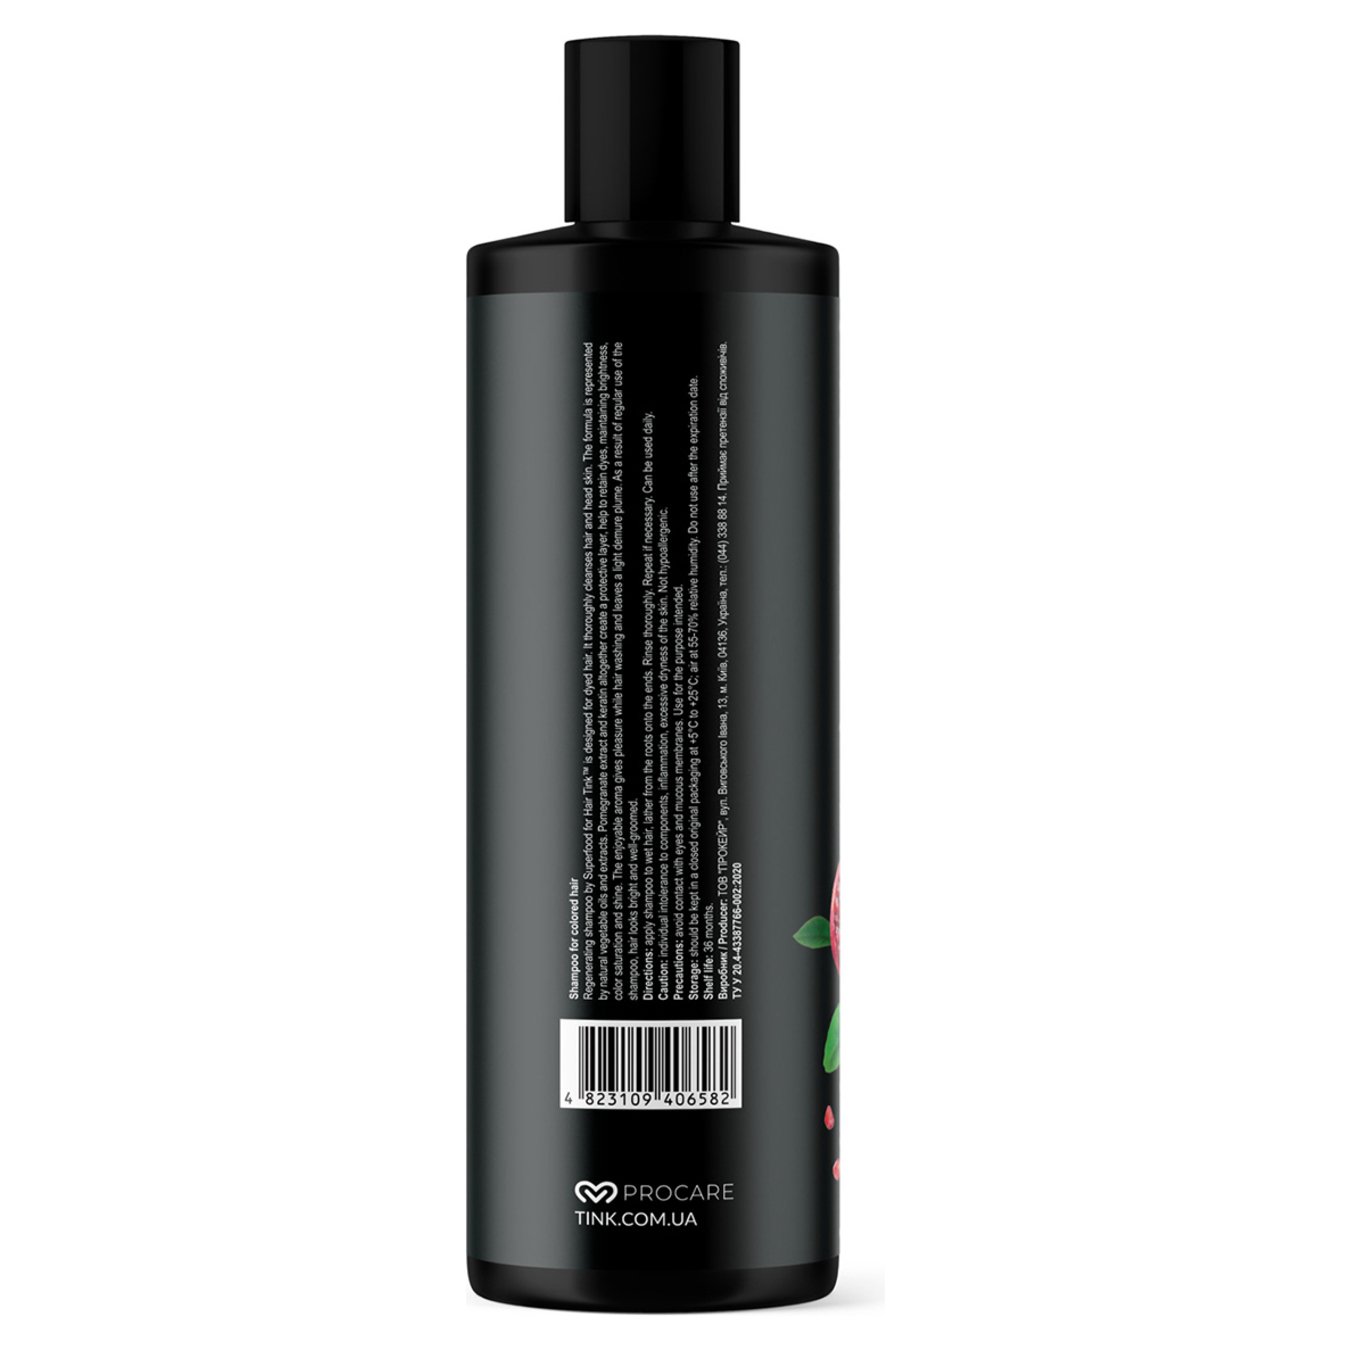 Shampoo Tink Pomegranate Keratin for dyed hair 500ml 3